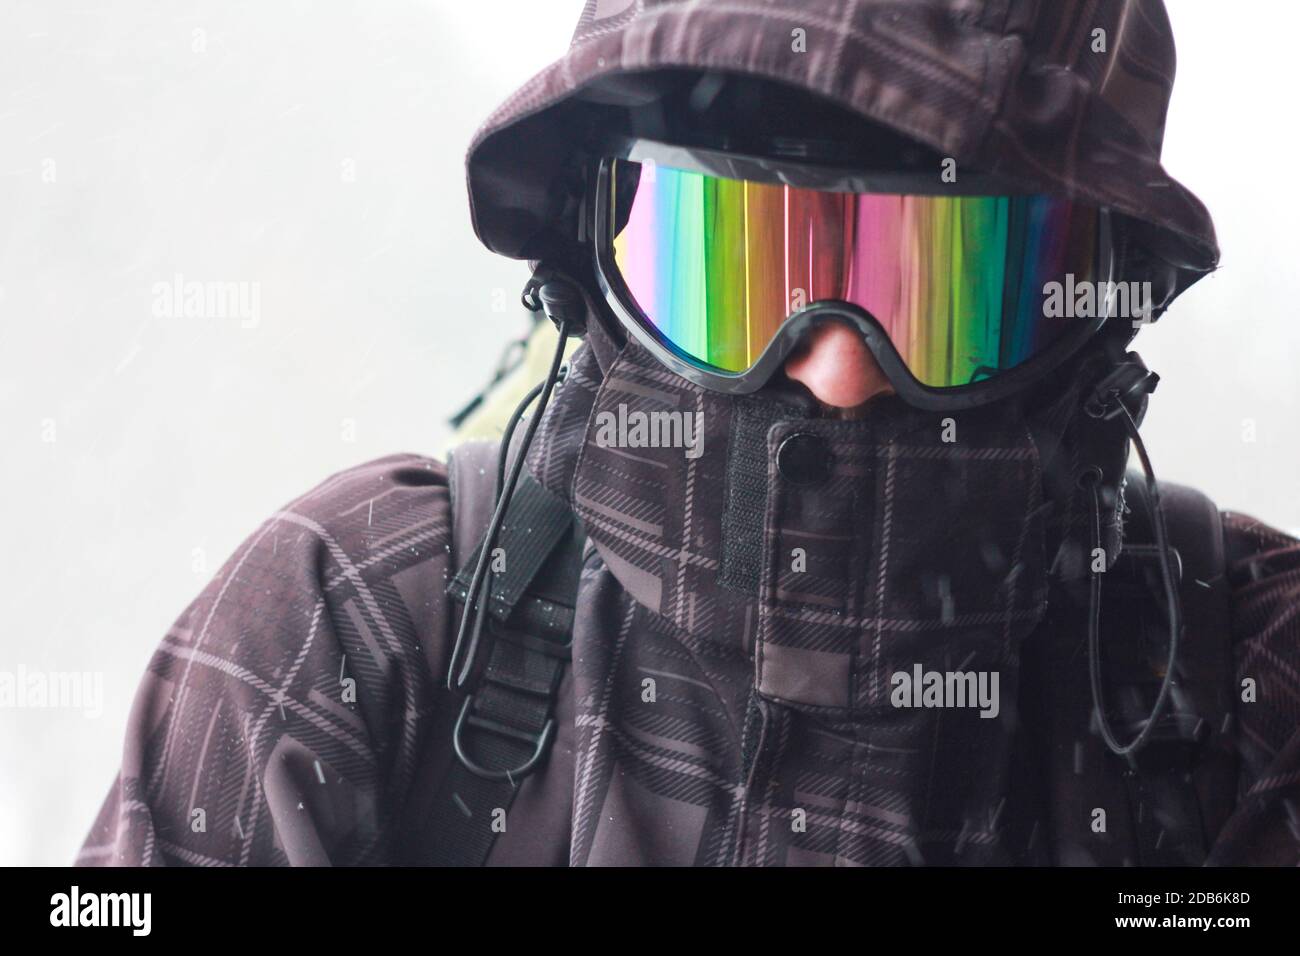 Porträt eines Touristen mit Rucksack bei schlechtem Wetter in den Bergen. Starker Schneesturm. Gesicht mit einer winddichten Maske geschlossen. Extreme Kleidung. Nahaufnahme Stockfoto